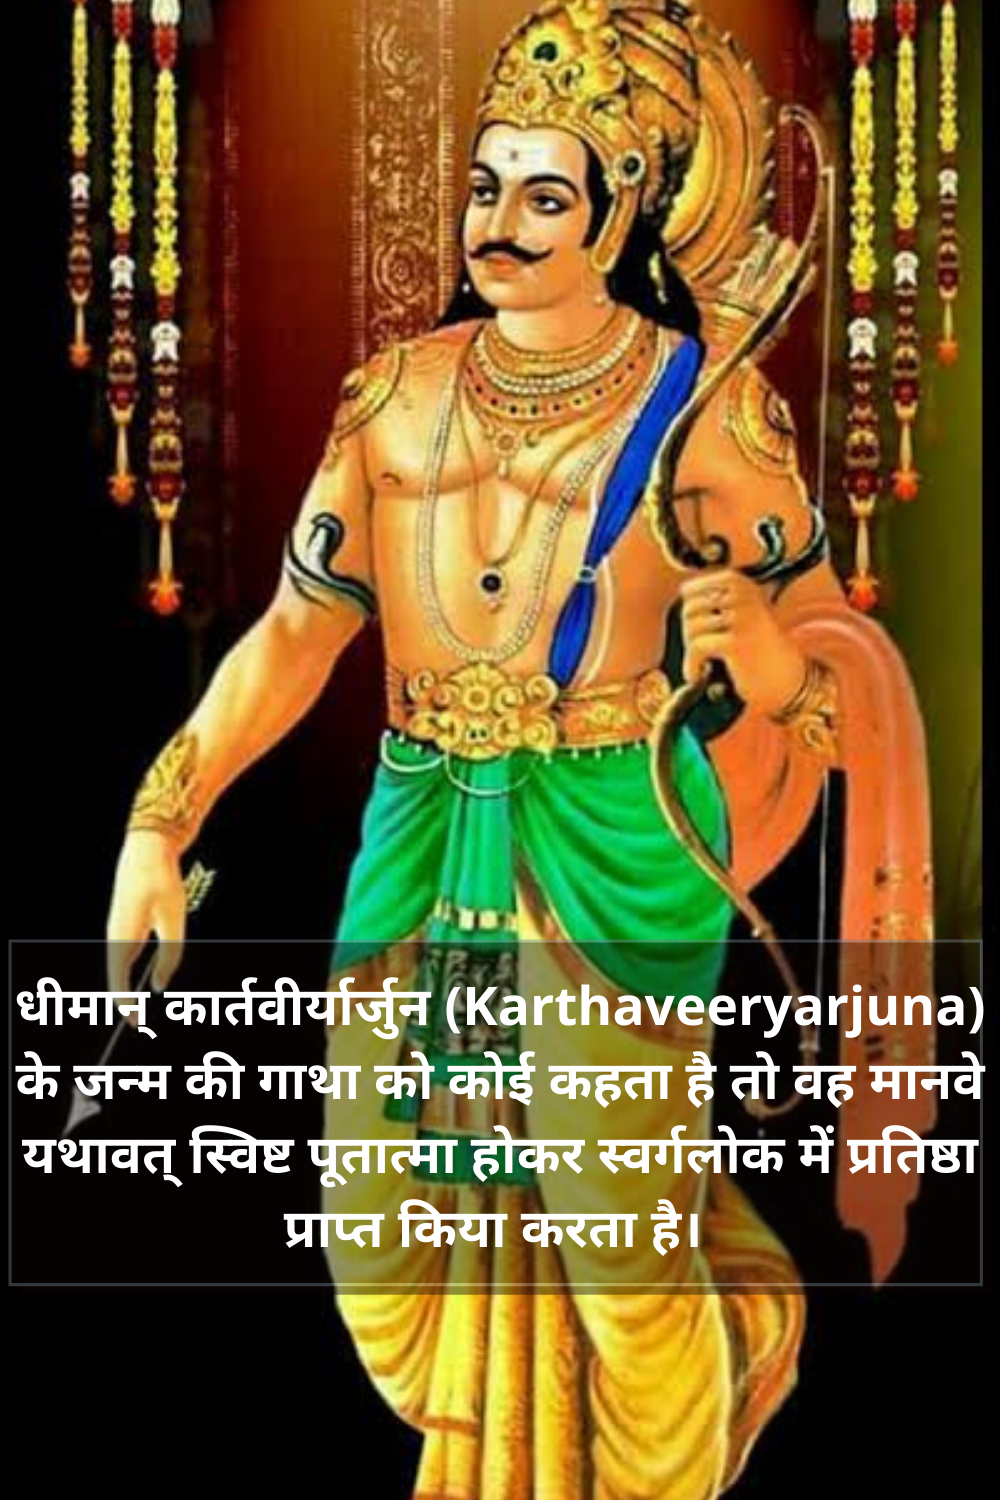 Karthaveeryarjuna कहानी ,सहस्त्रार्जुन मंत्र, कार्तविर्यार्जुन स्तोत्र Pdf ,कार्तविर्यार्जुन मंत्र Pdf, कार्तविर्यार्जुन राजा, गतं नष्टं च लभ्यते,